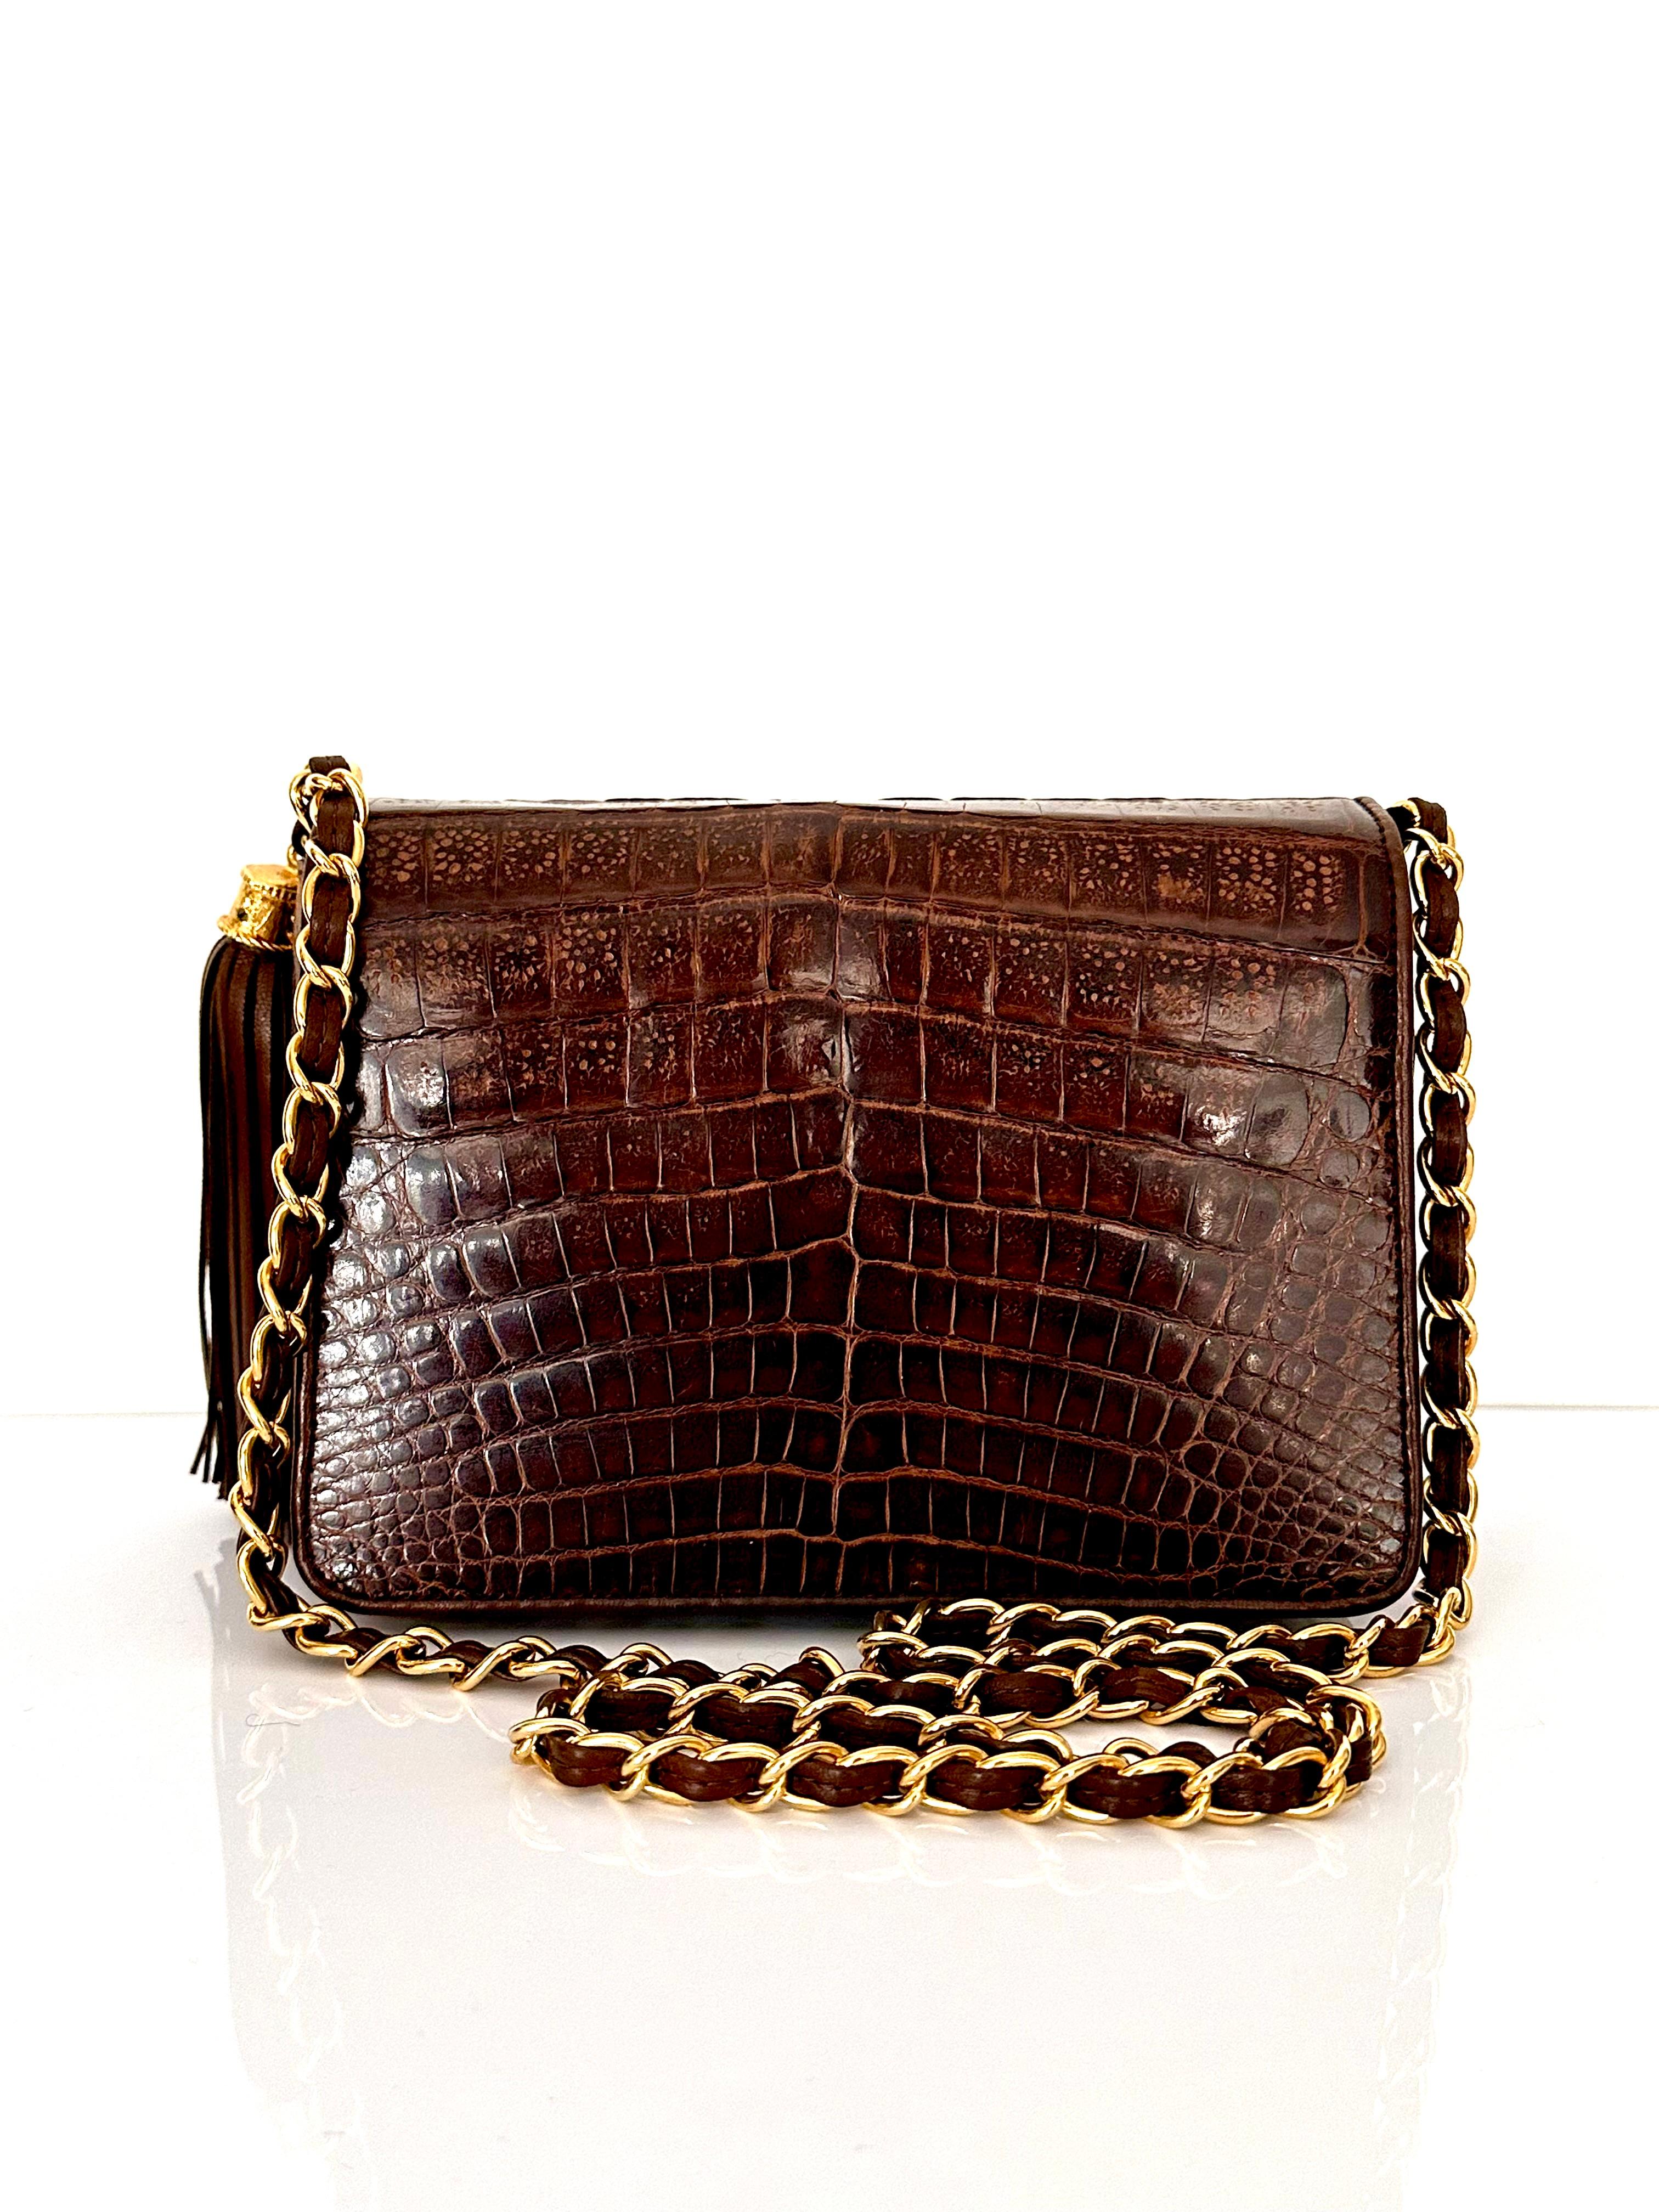 Zum Kauf angeboten wird diese absolut atemberaubende und seltene Vintage Chanel Tasche! Dieses wunderschöne Stück ist aus echtem Krokodil gefertigt und mit 24kt vergoldeten Beschlägen versehen! Wie Sie auf den Fotos sehen können, ist nicht nur das